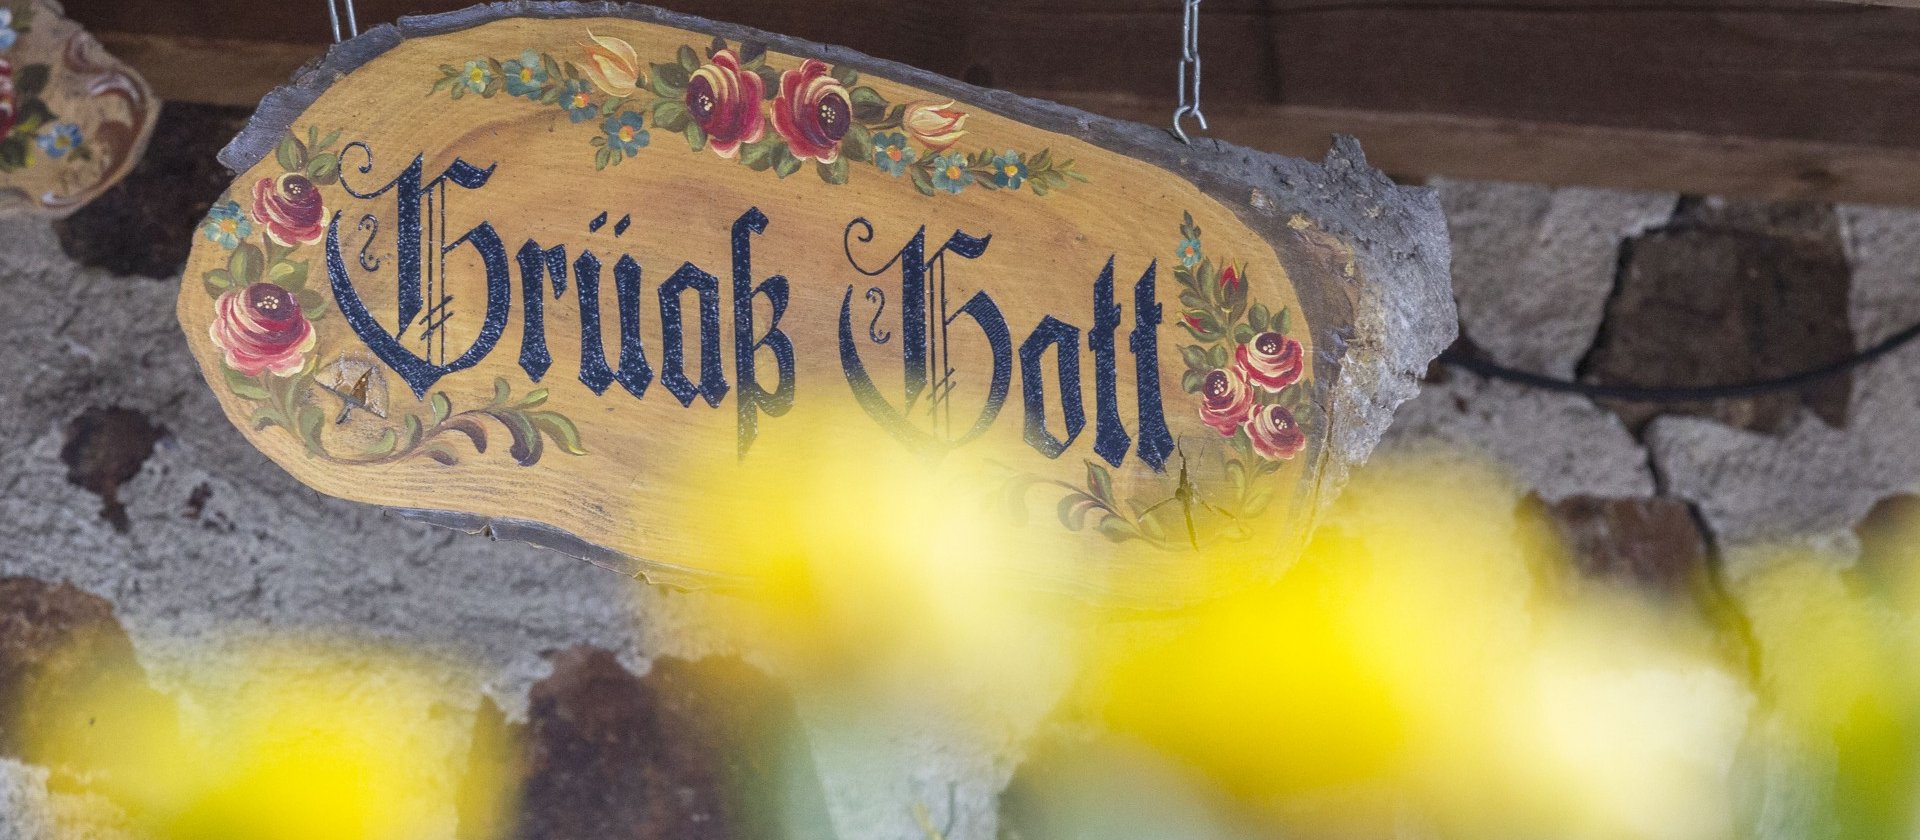 Foto von einem verziertem Holzschild, auf dem "Grüß Gott" steht, im Vordergrund sieht man verschwommen gelbe Blumen